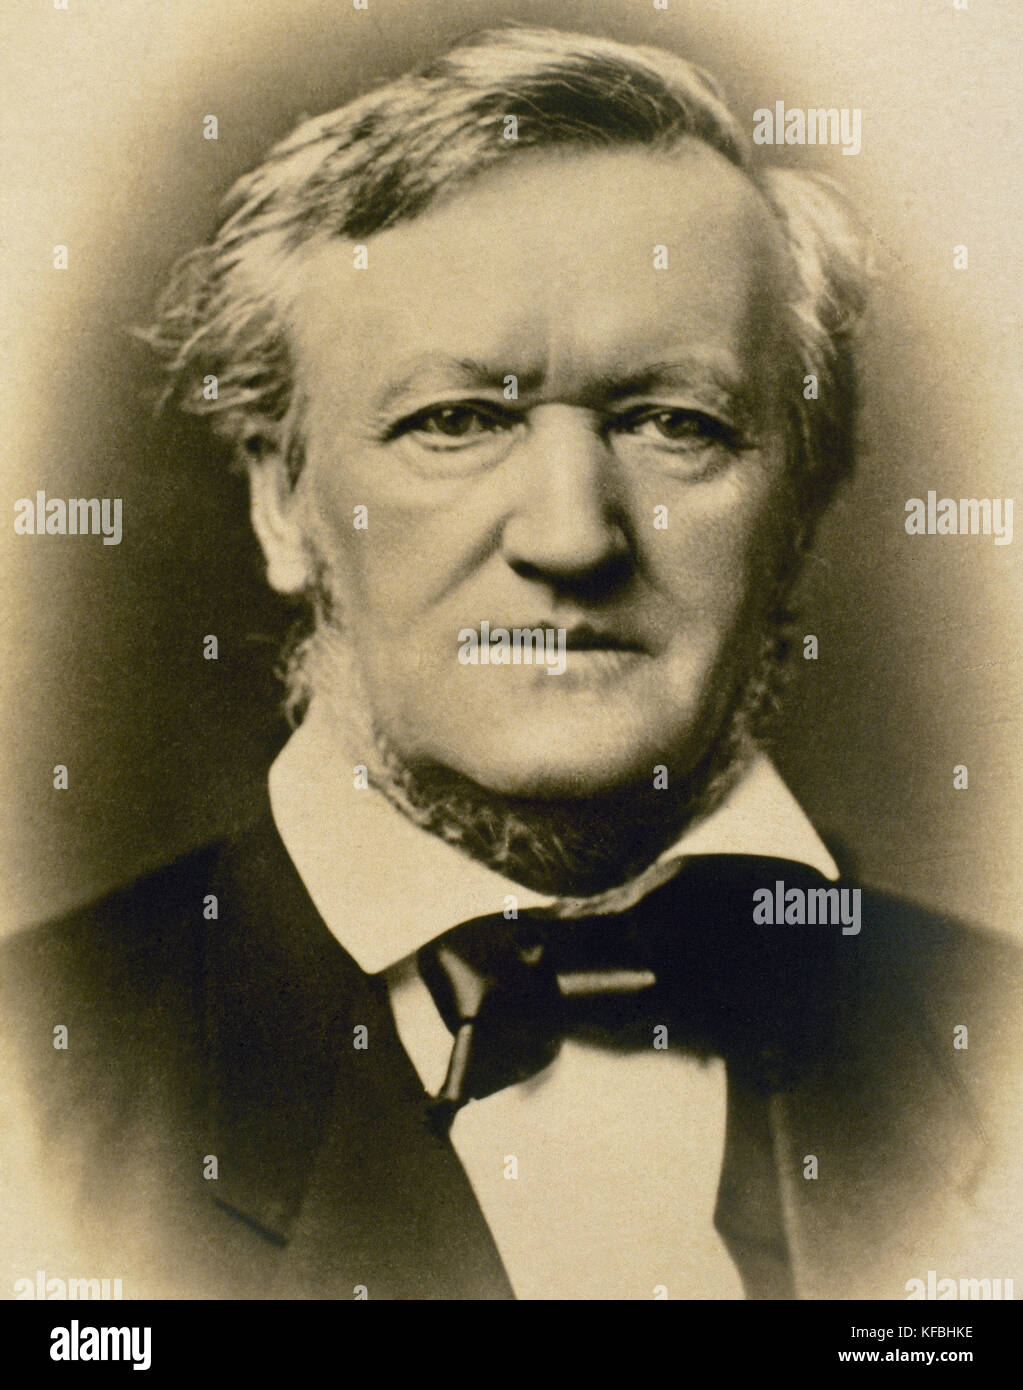 Richard Wagner (1813-1883). compositeur allemand. portrait. la photographie. Banque D'Images